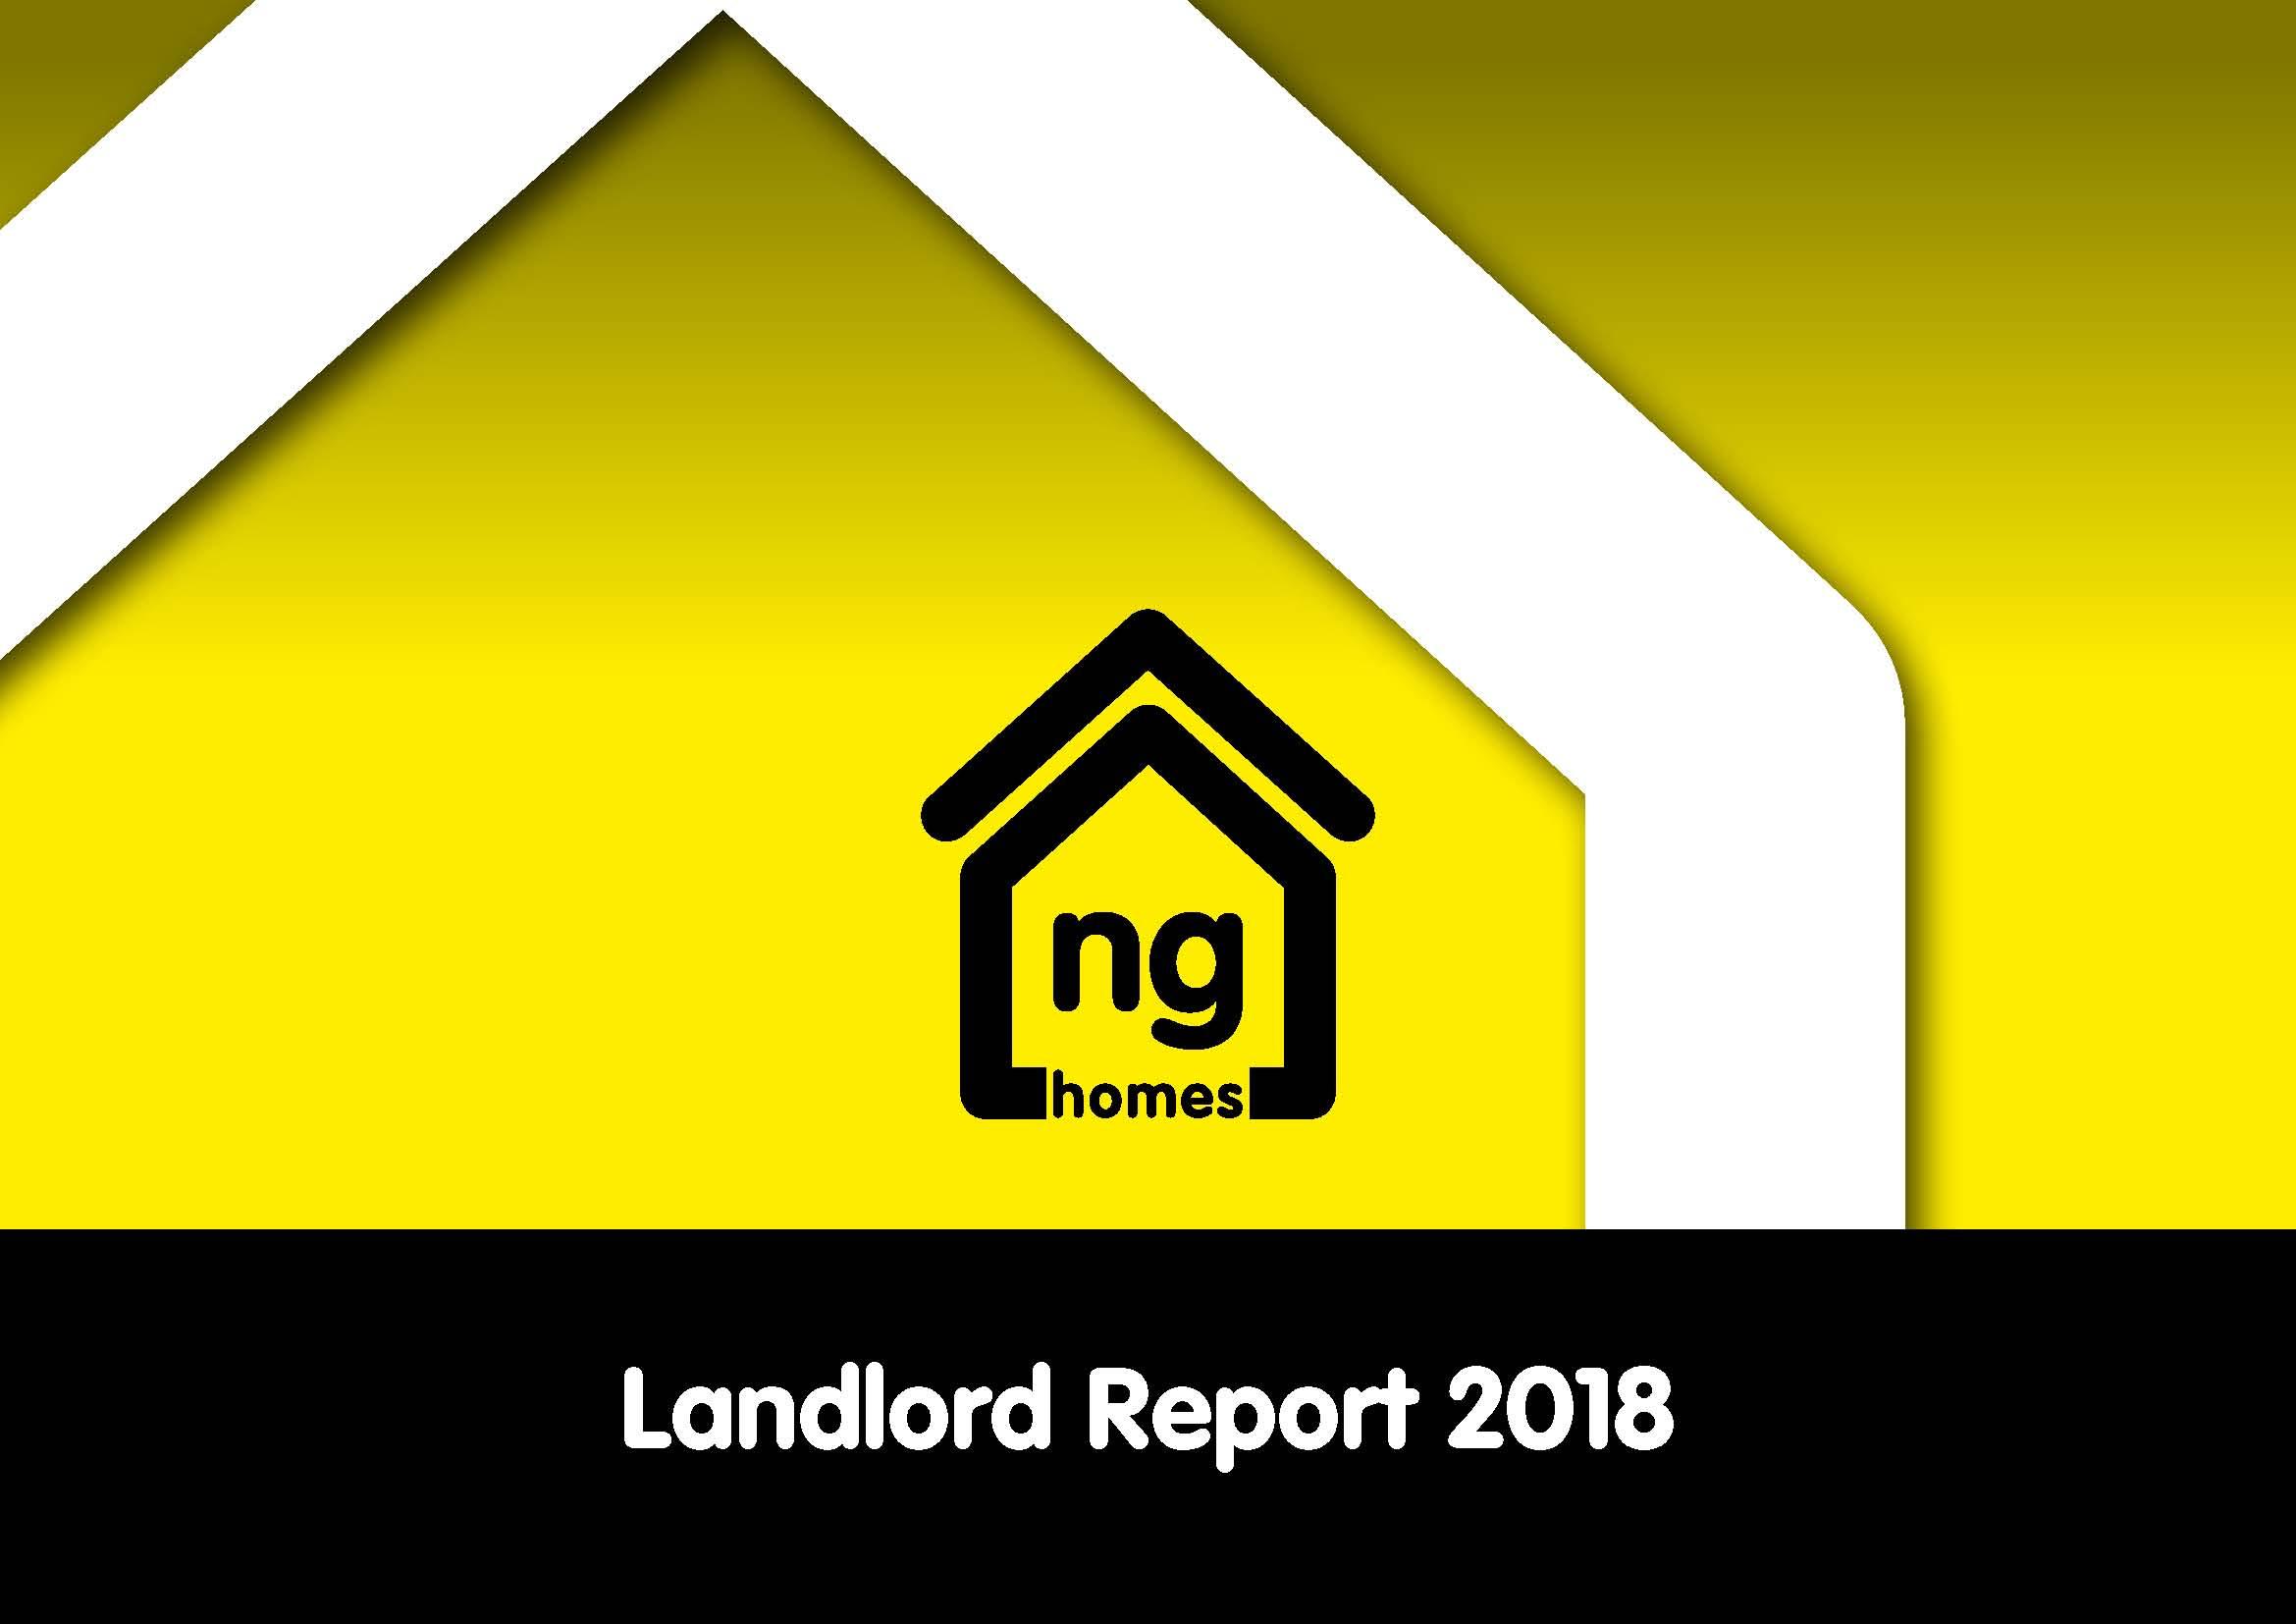 Ng Homes Landlord Report 2018